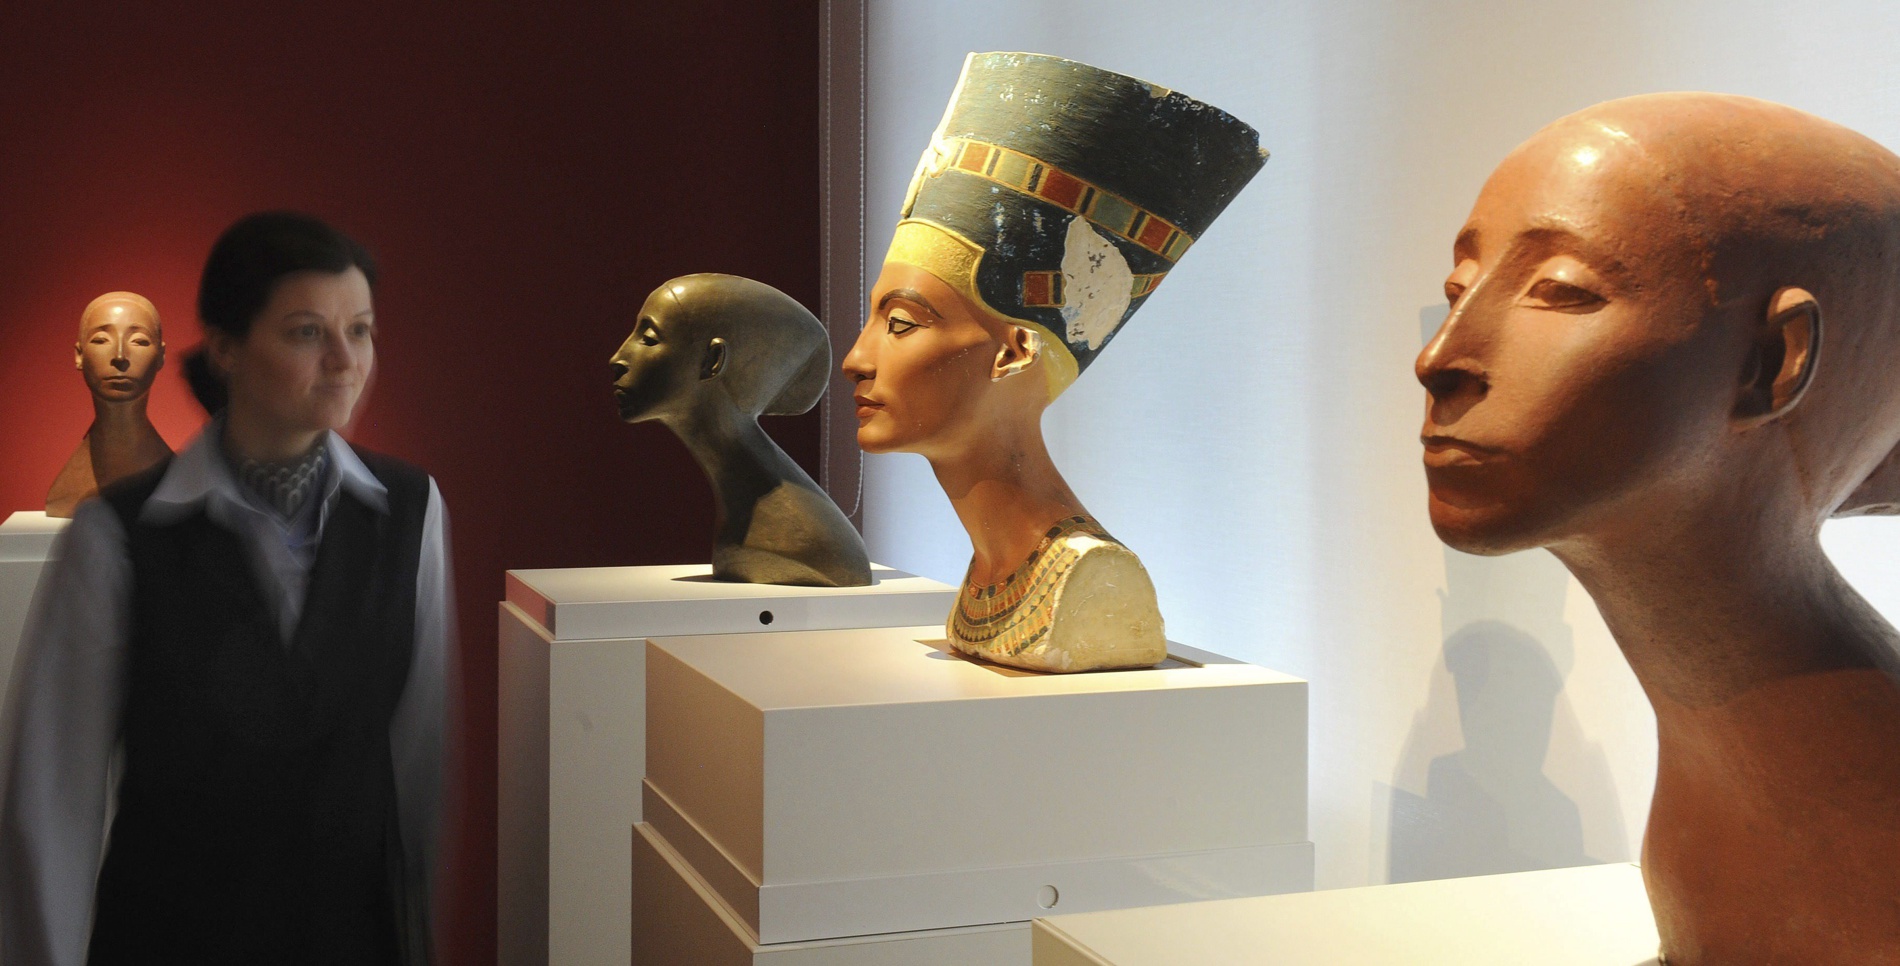 el busto de nefertiti cumple 100 años de exhibición al público